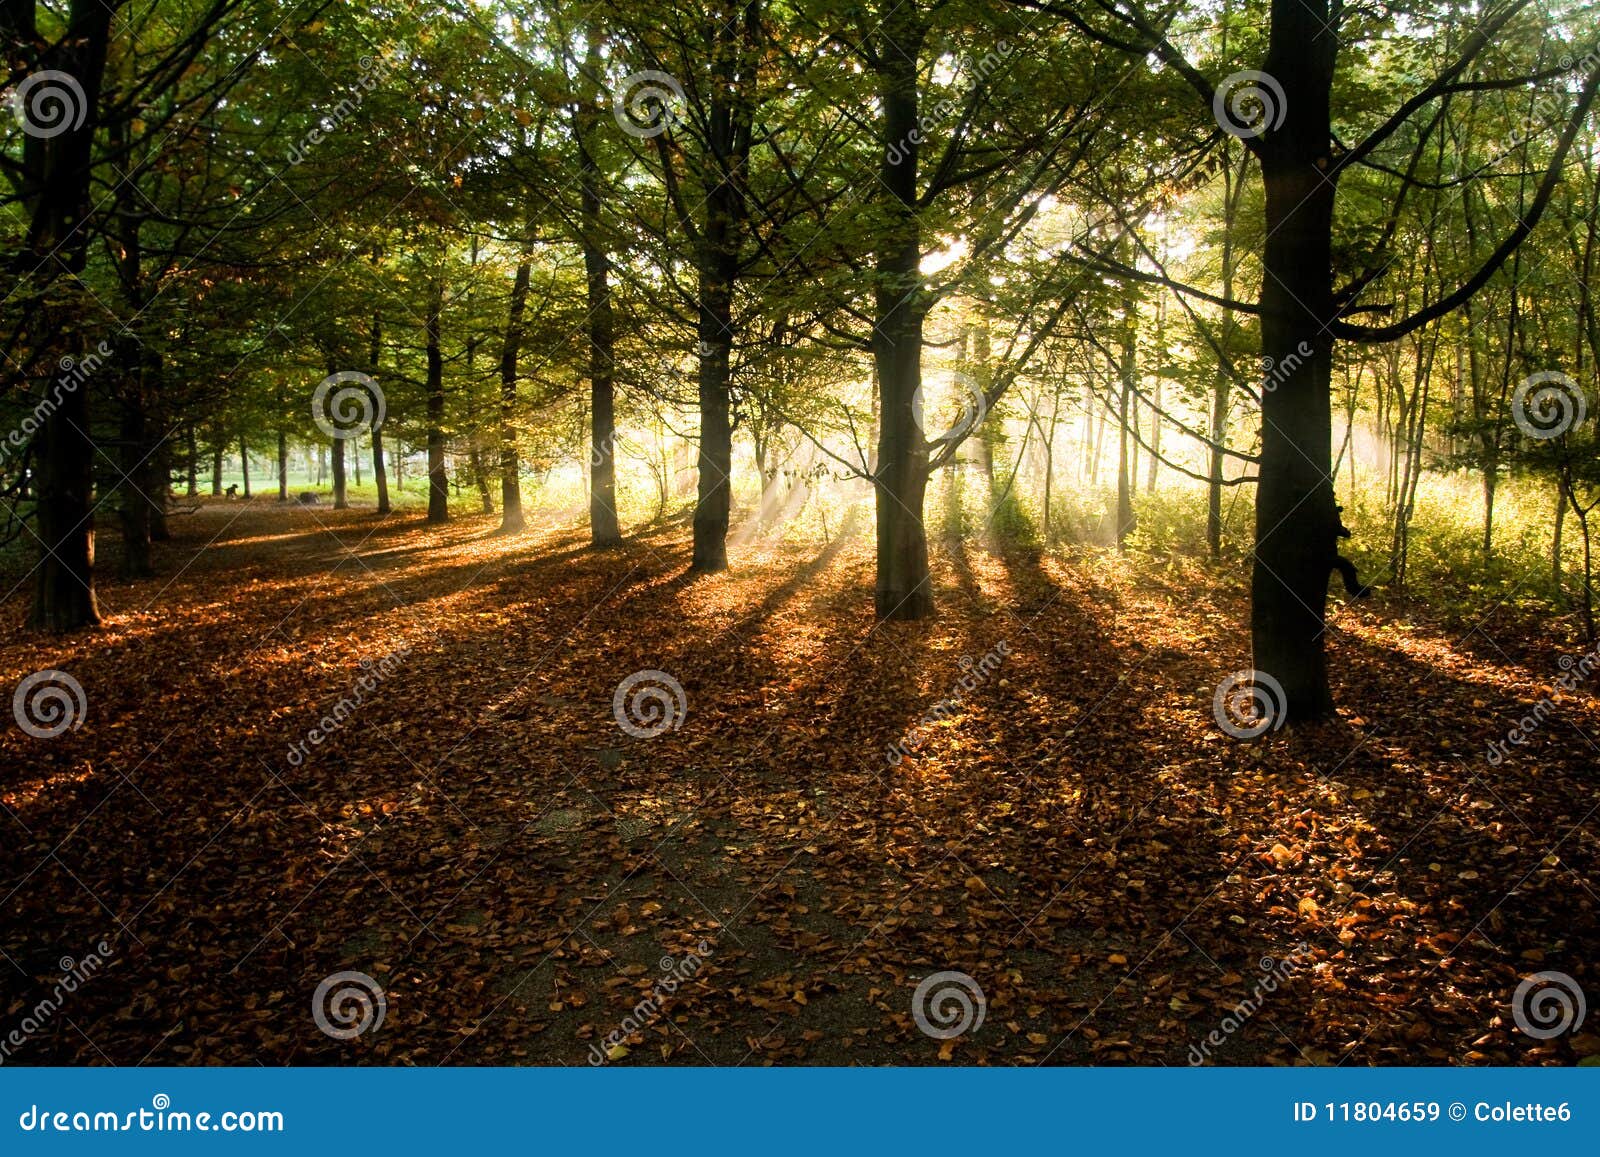 sunrays through beech trees in autumn